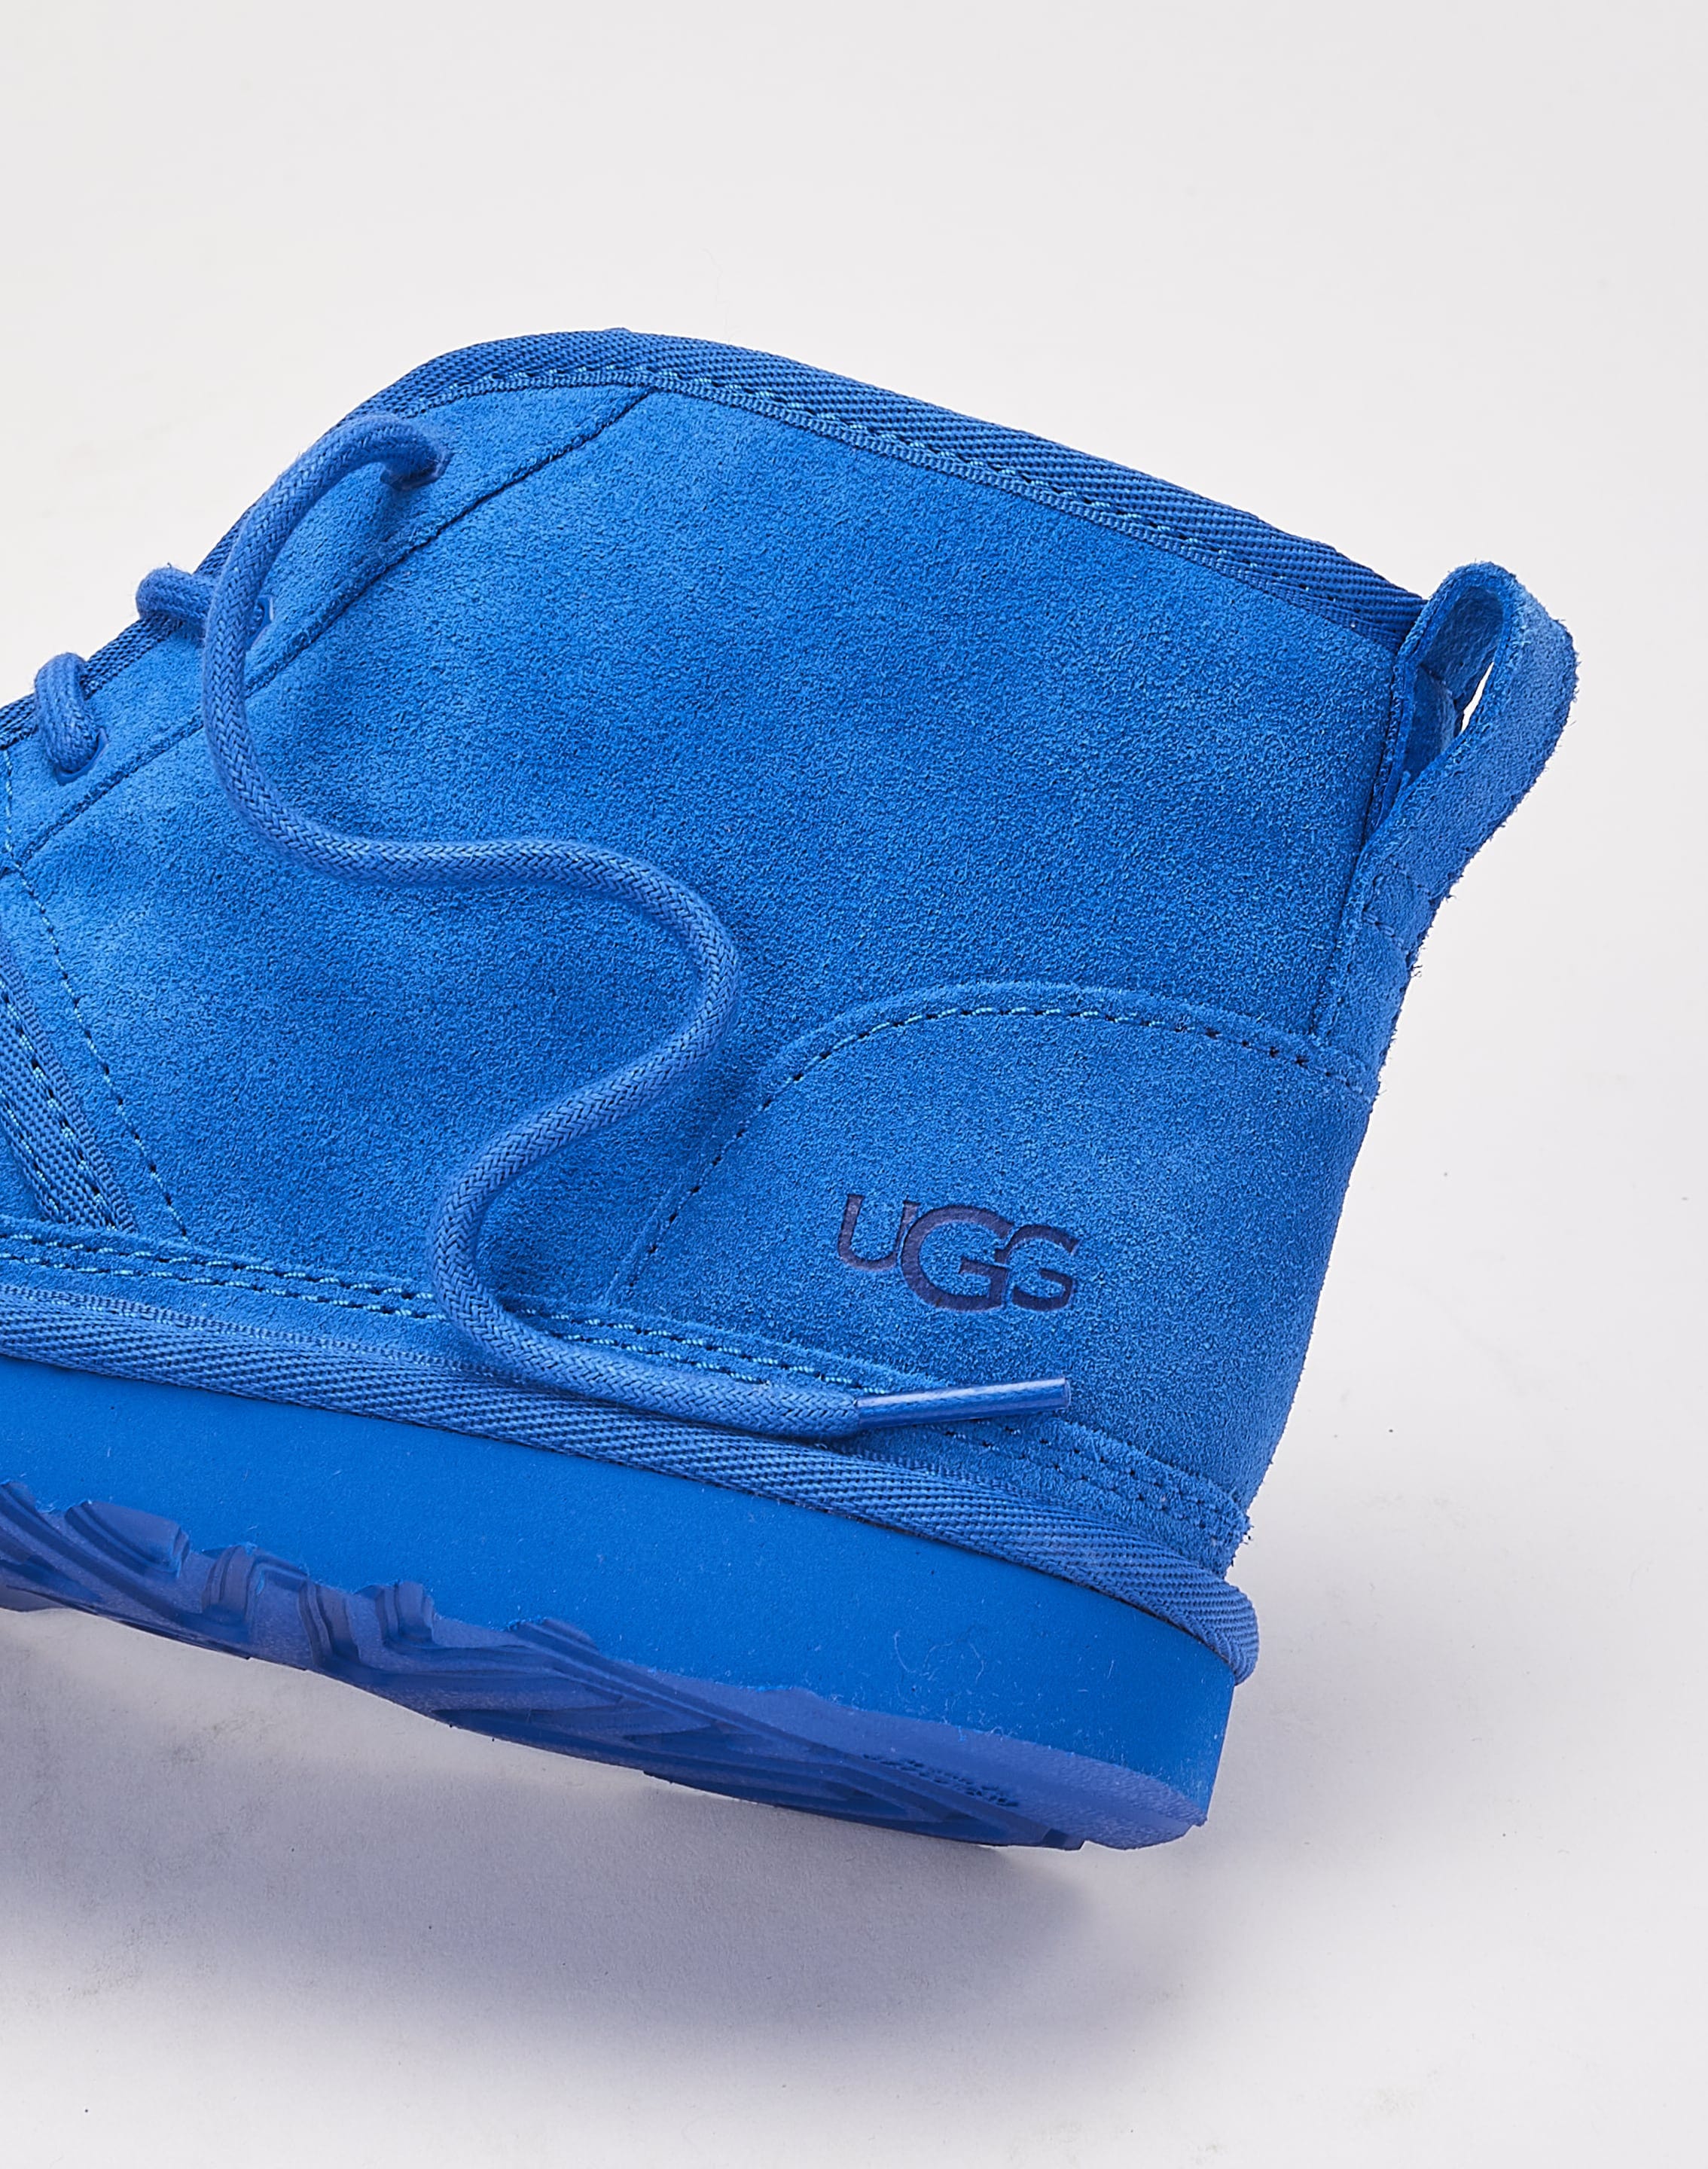 Ugg Boy's Neumel II Water Resistant Chukka Boot